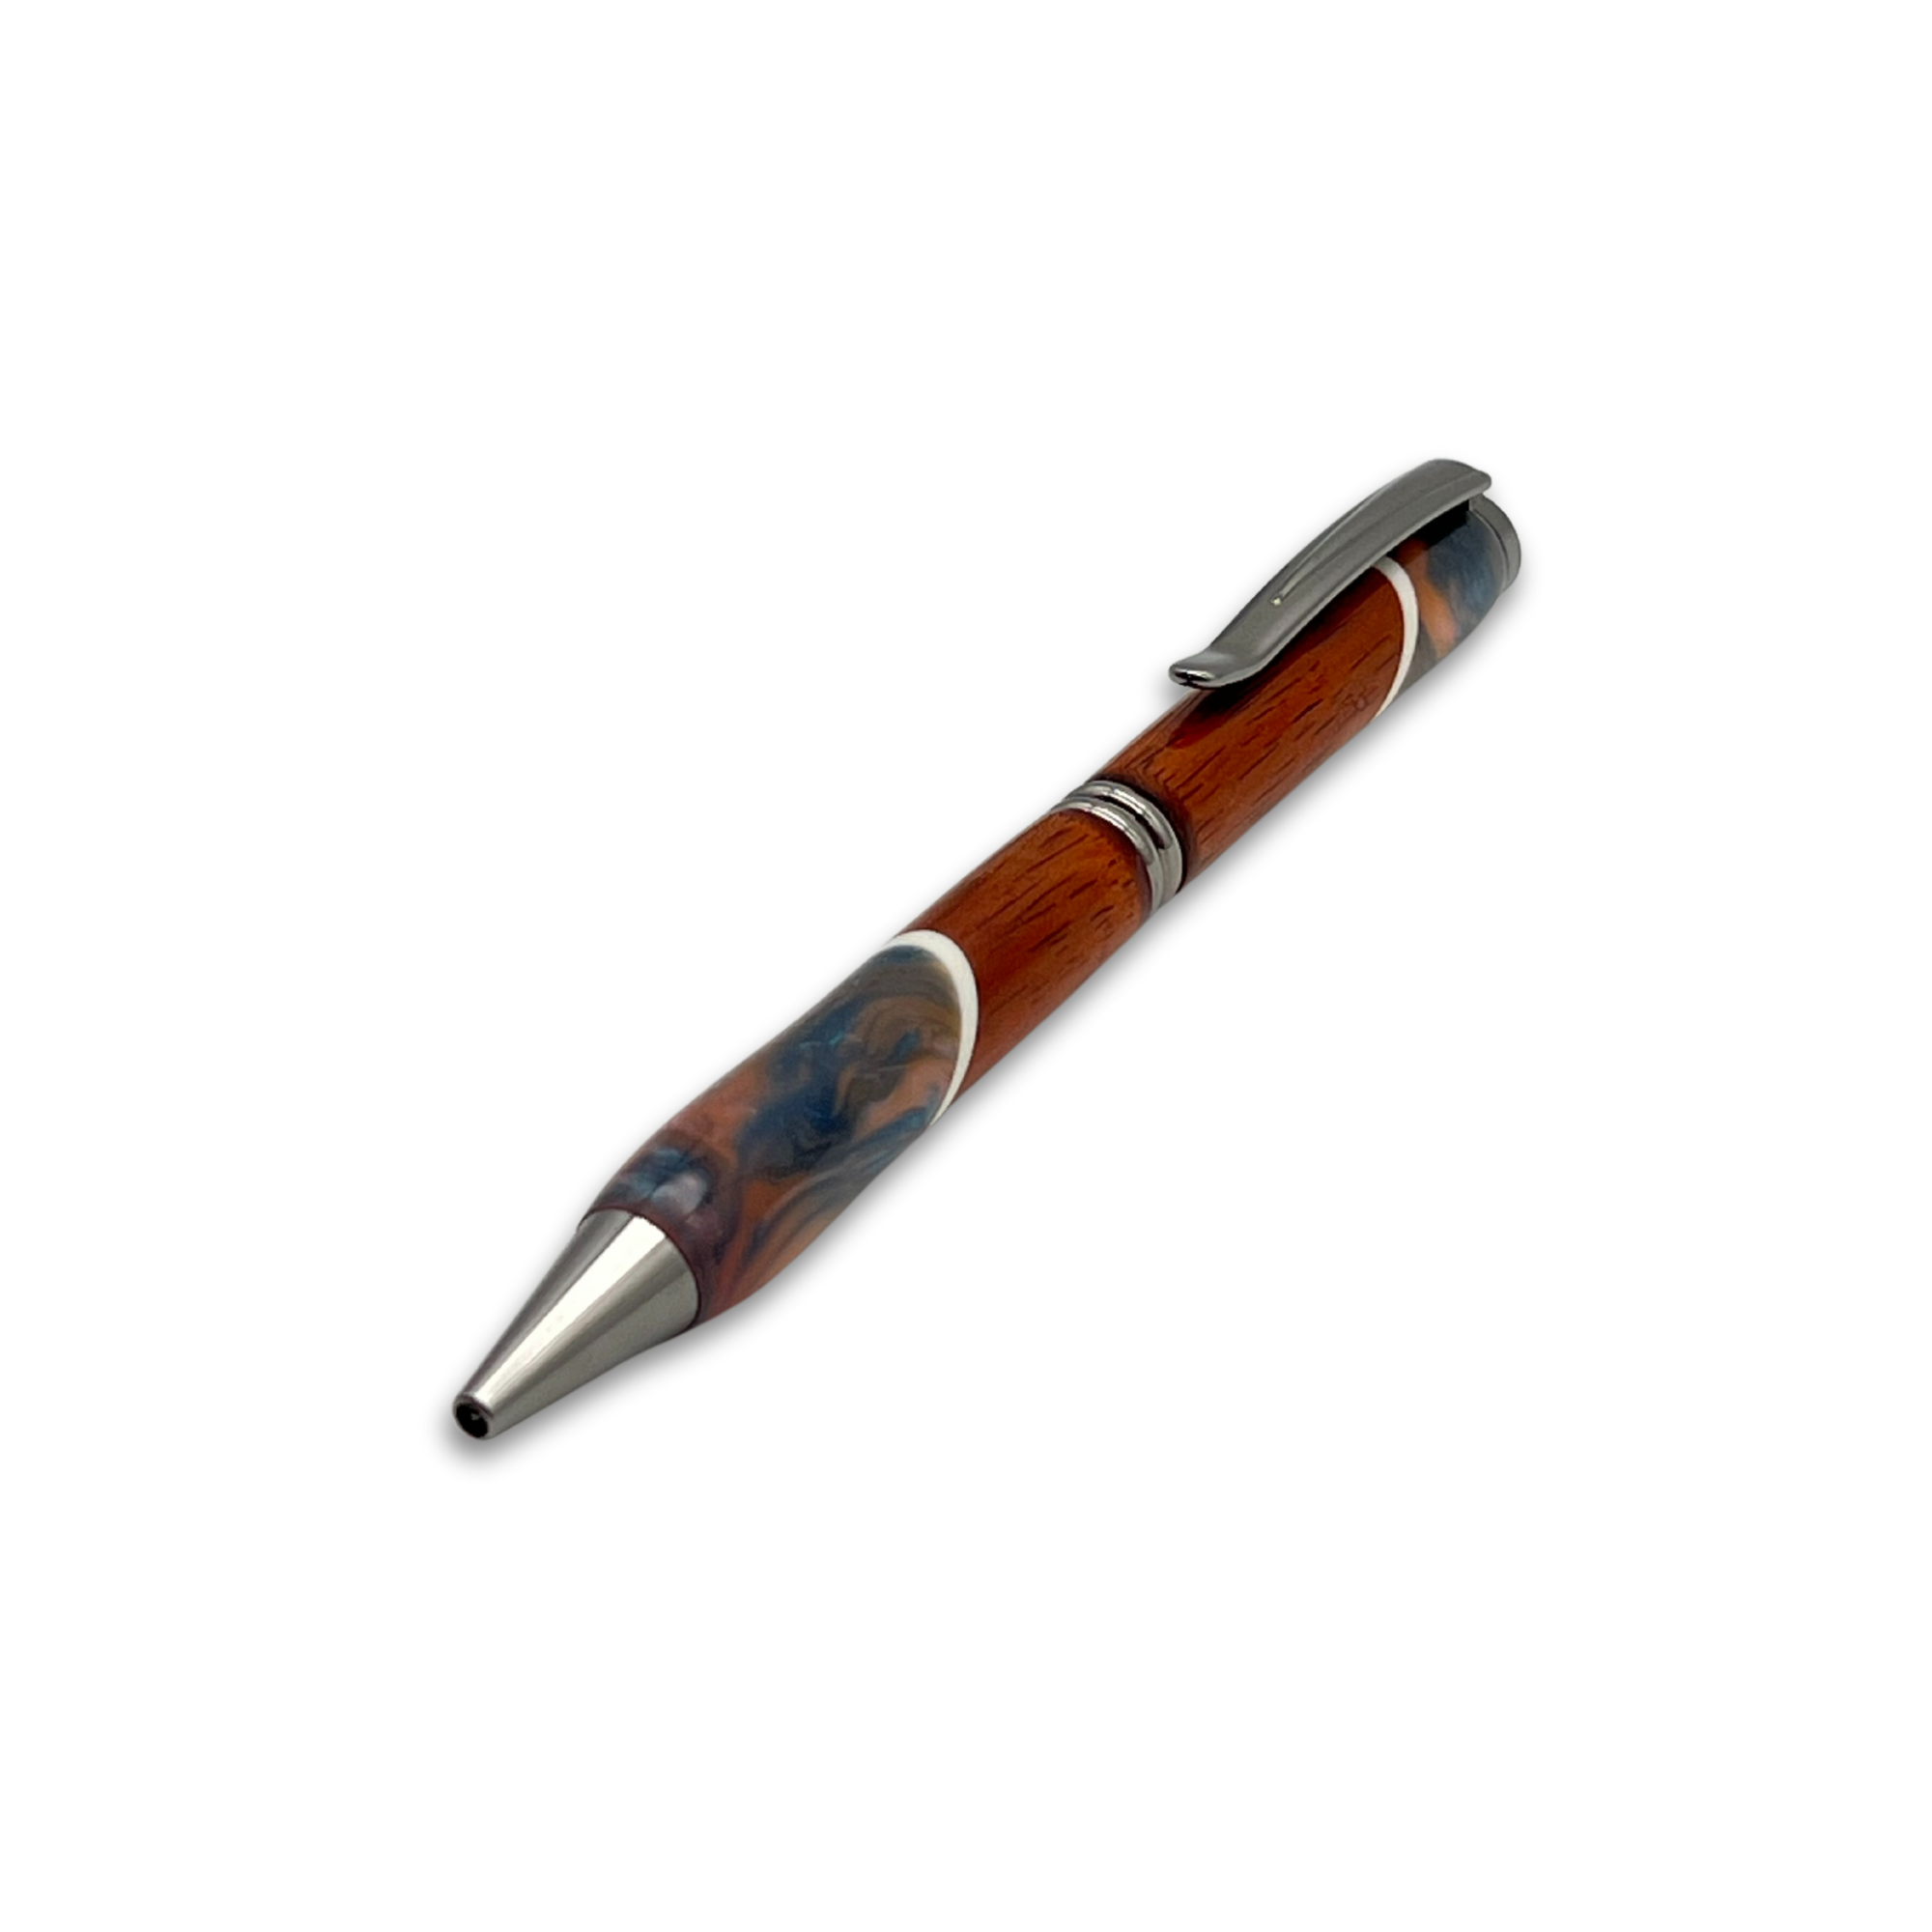 Pop-Up Mākeke - Lau Lau Woodworks - Designer Simplicity Ballpoint Pen - Style #2 - Front View